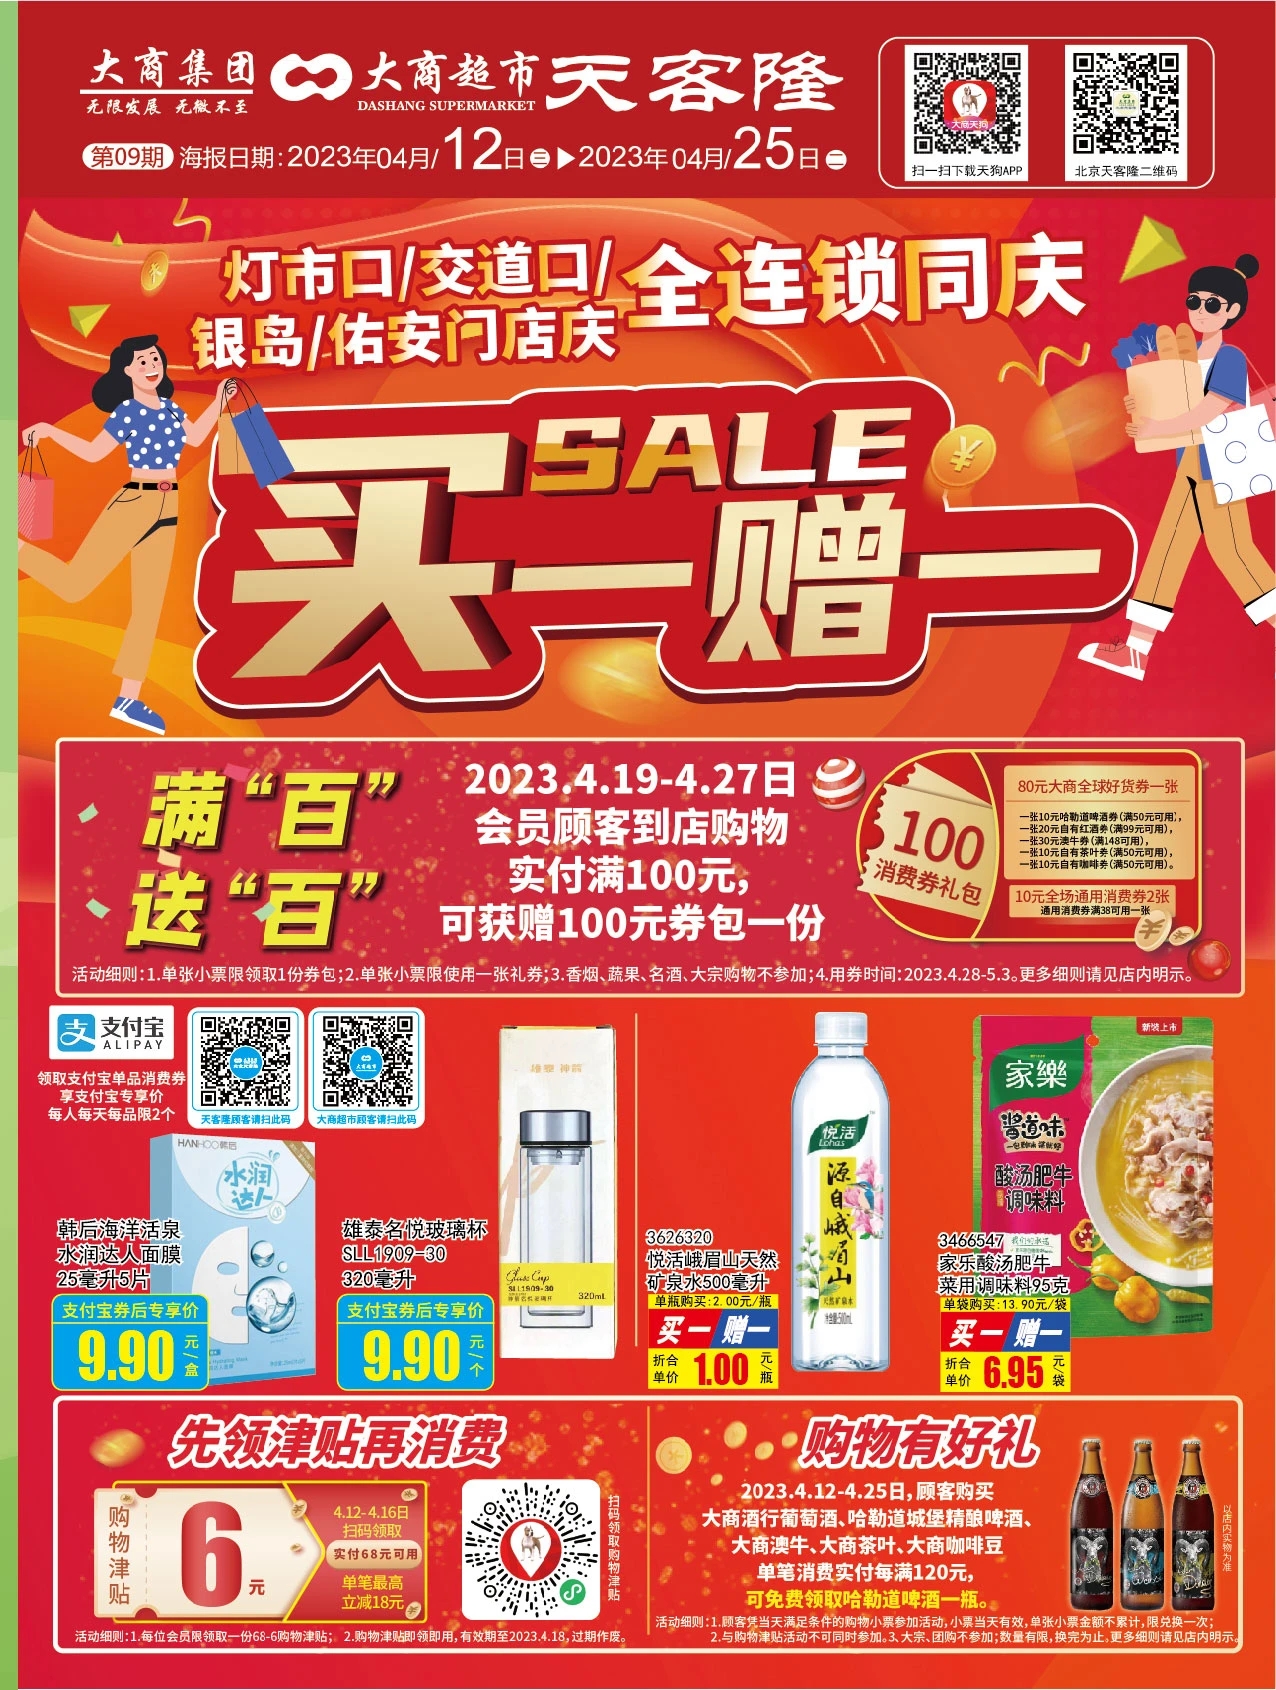 北京天客隆超市促销海报（第09期）